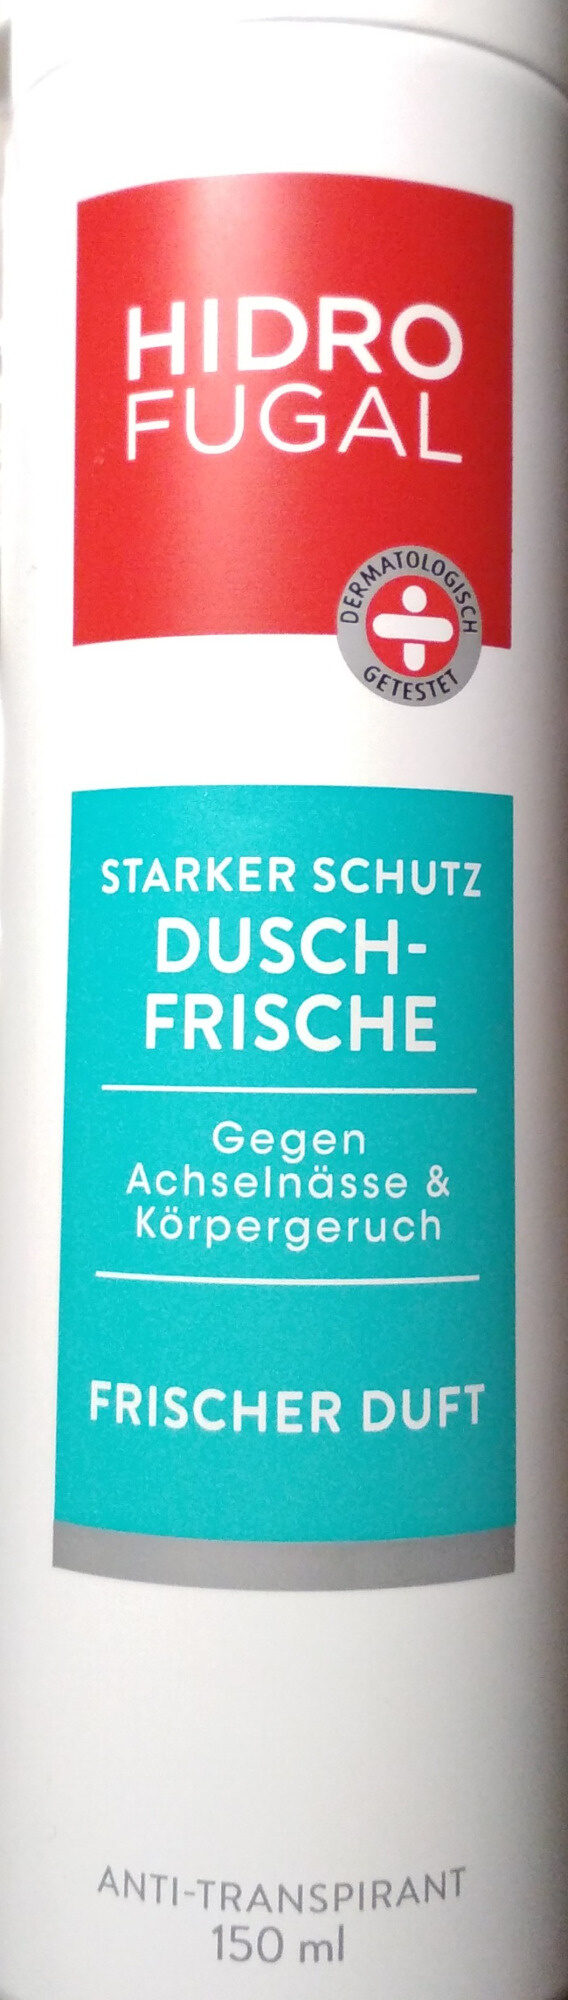 Dusch-Frische - Produkt - de